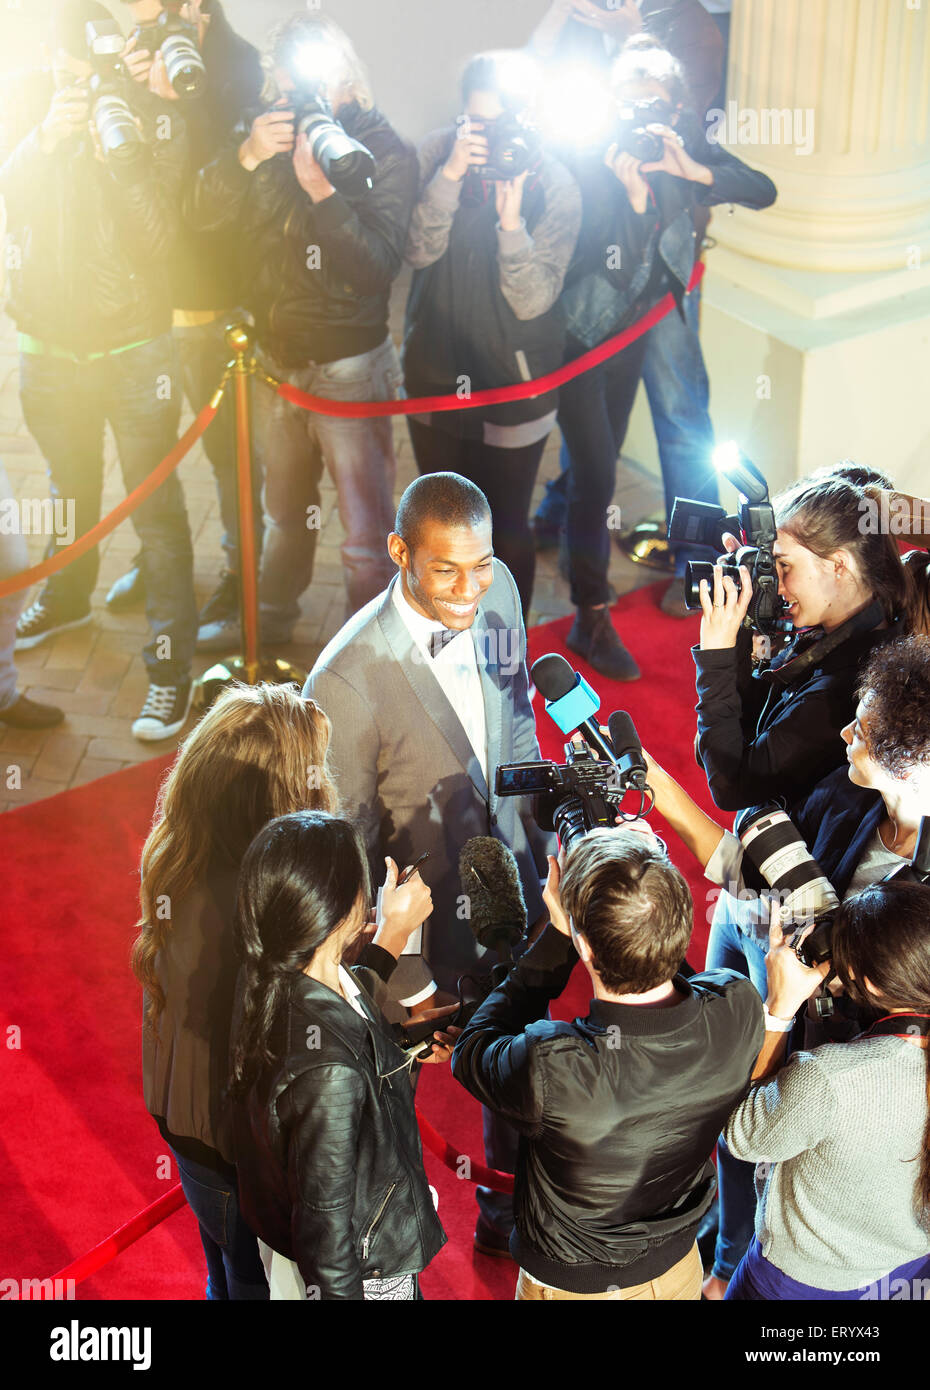 La célébrité d'être interviewé et photographié par les paparazzi photographe chez Red Carpet event Banque D'Images